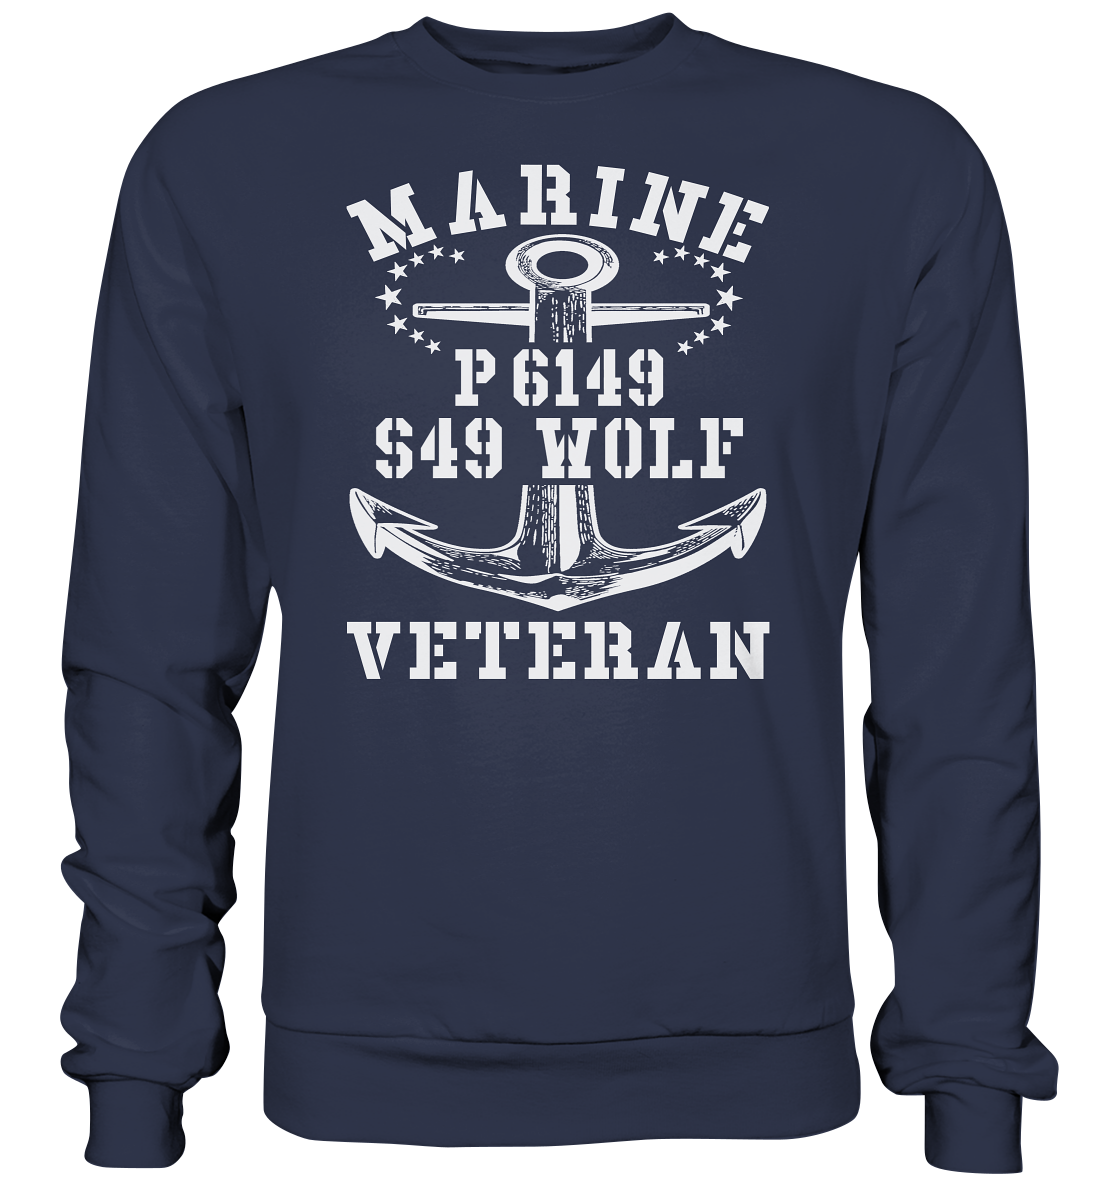 P6149 S49 WOLF Marine Veteran - Premium Sweatshirt